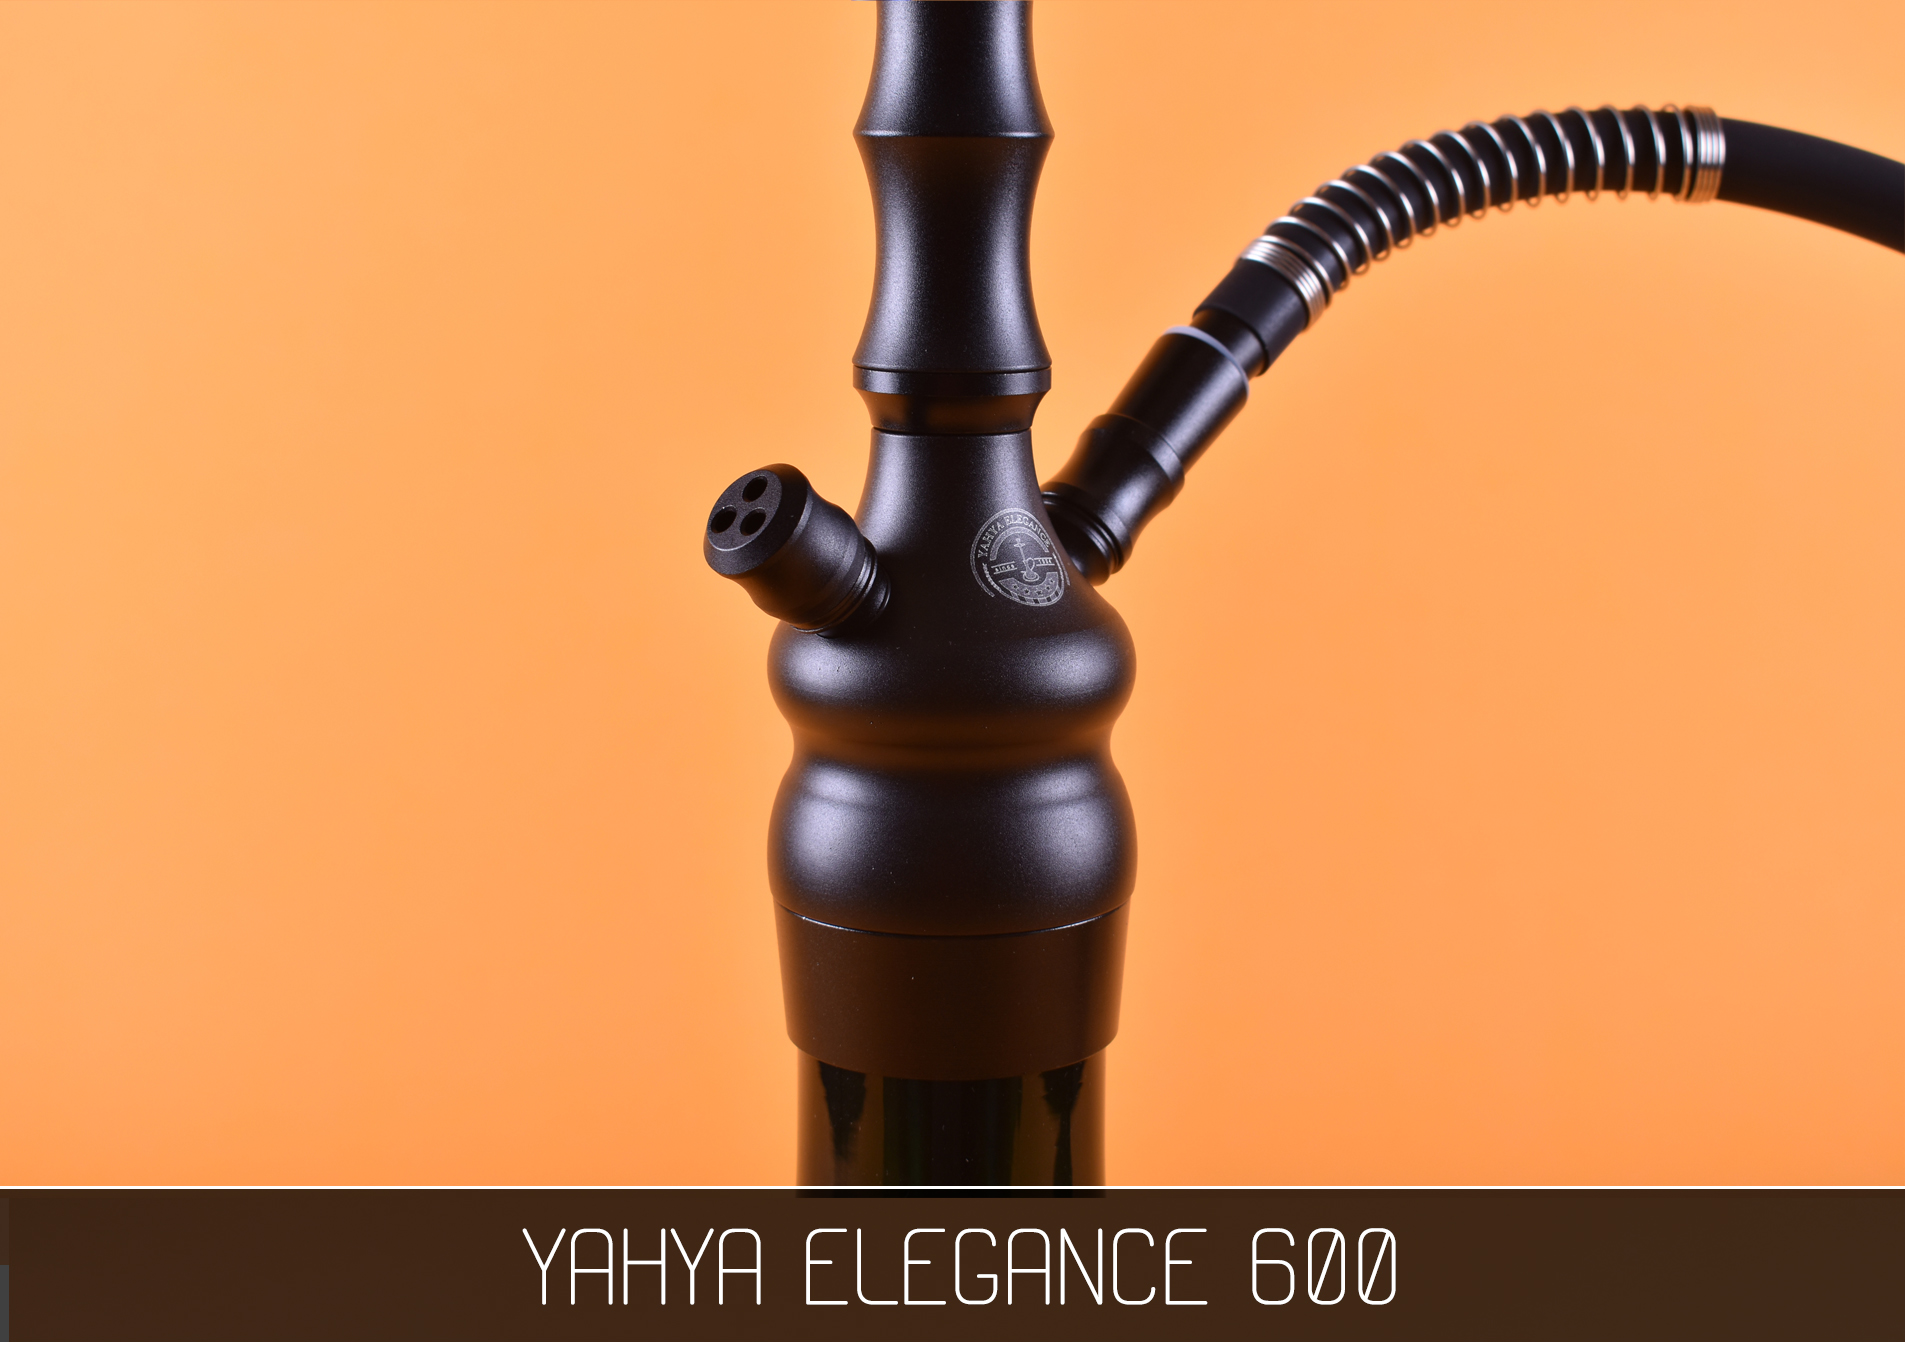 Кальян Yahya Elegance 600 черный - фото 7 - Kalyanchik.ua